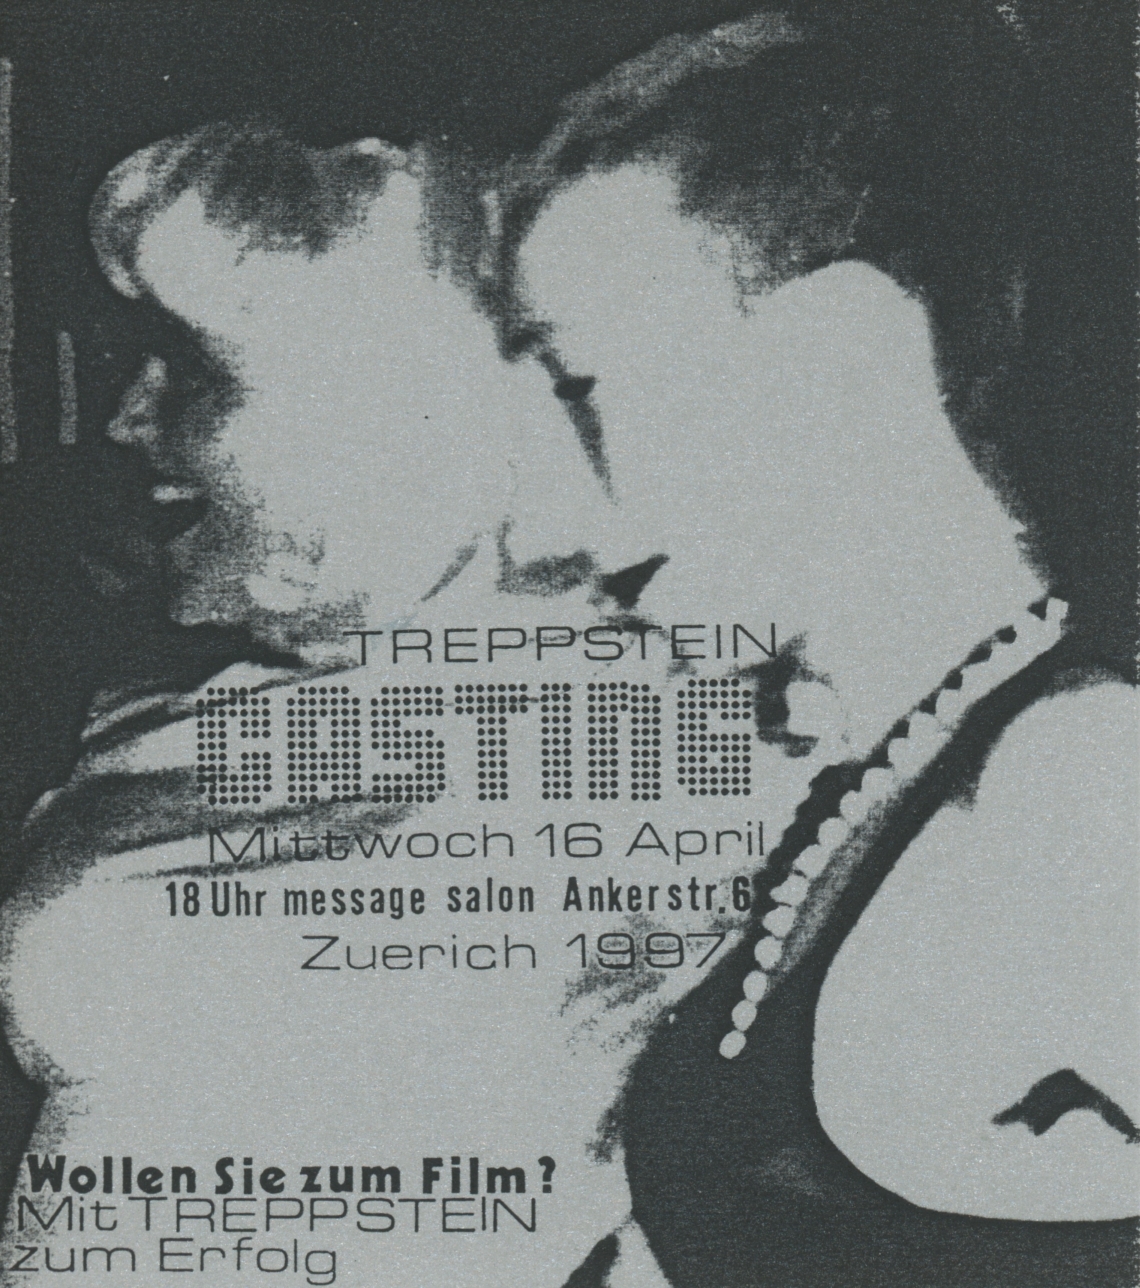 Treppstein Casting, message salon, Flyer 1997